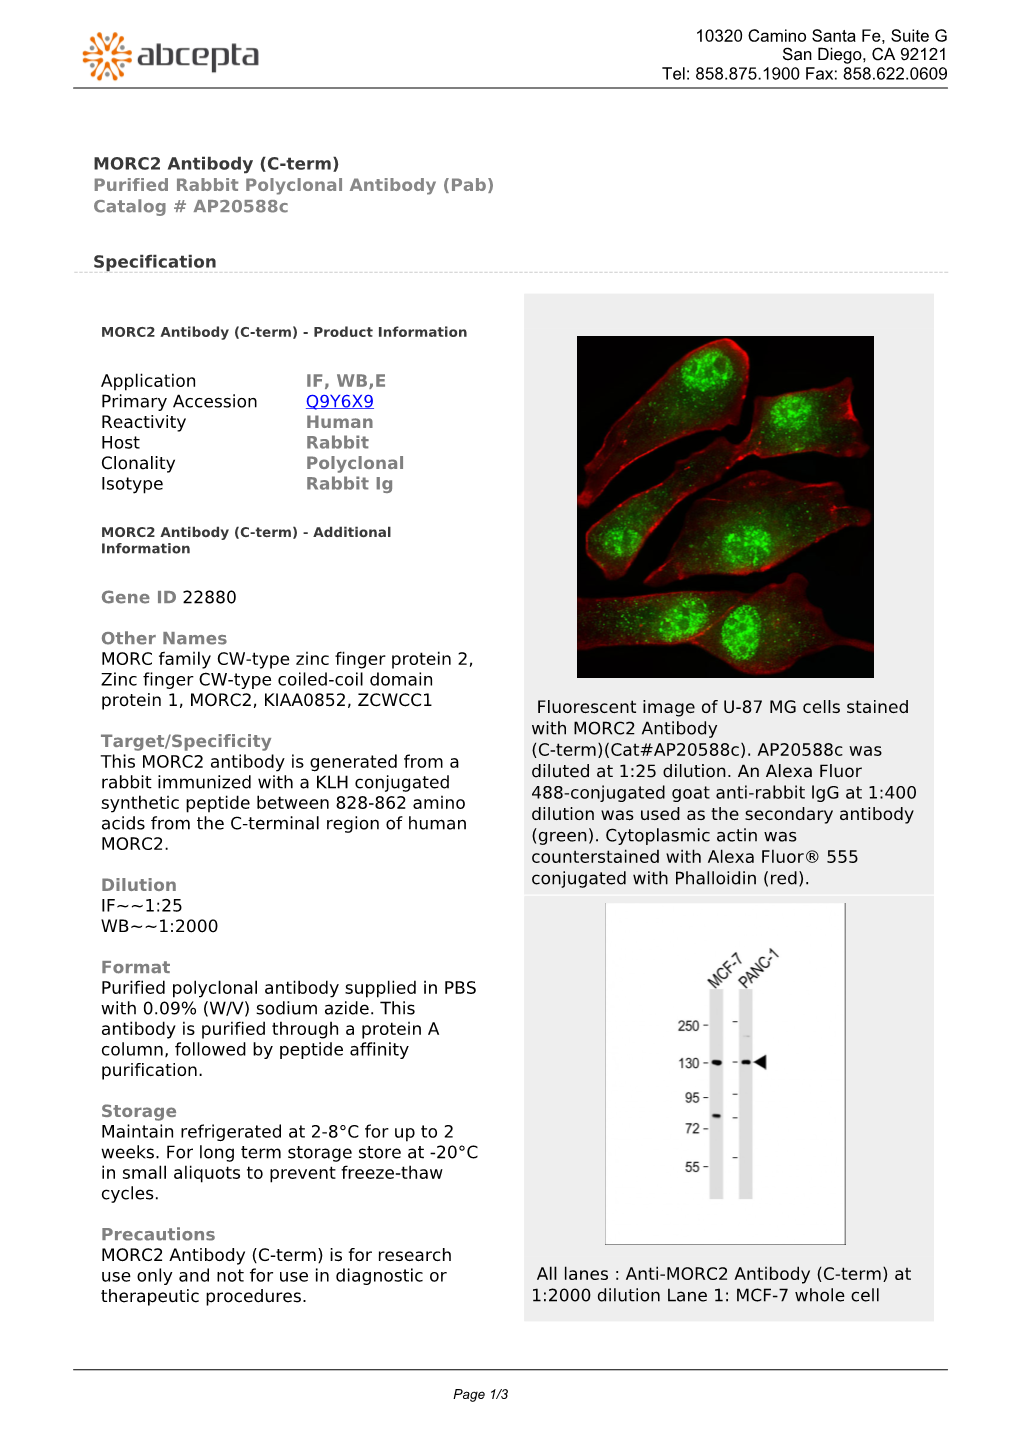 MORC2 Antibody (C-Term) Purified Rabbit Polyclonal Antibody (Pab) Catalog # Ap20588c